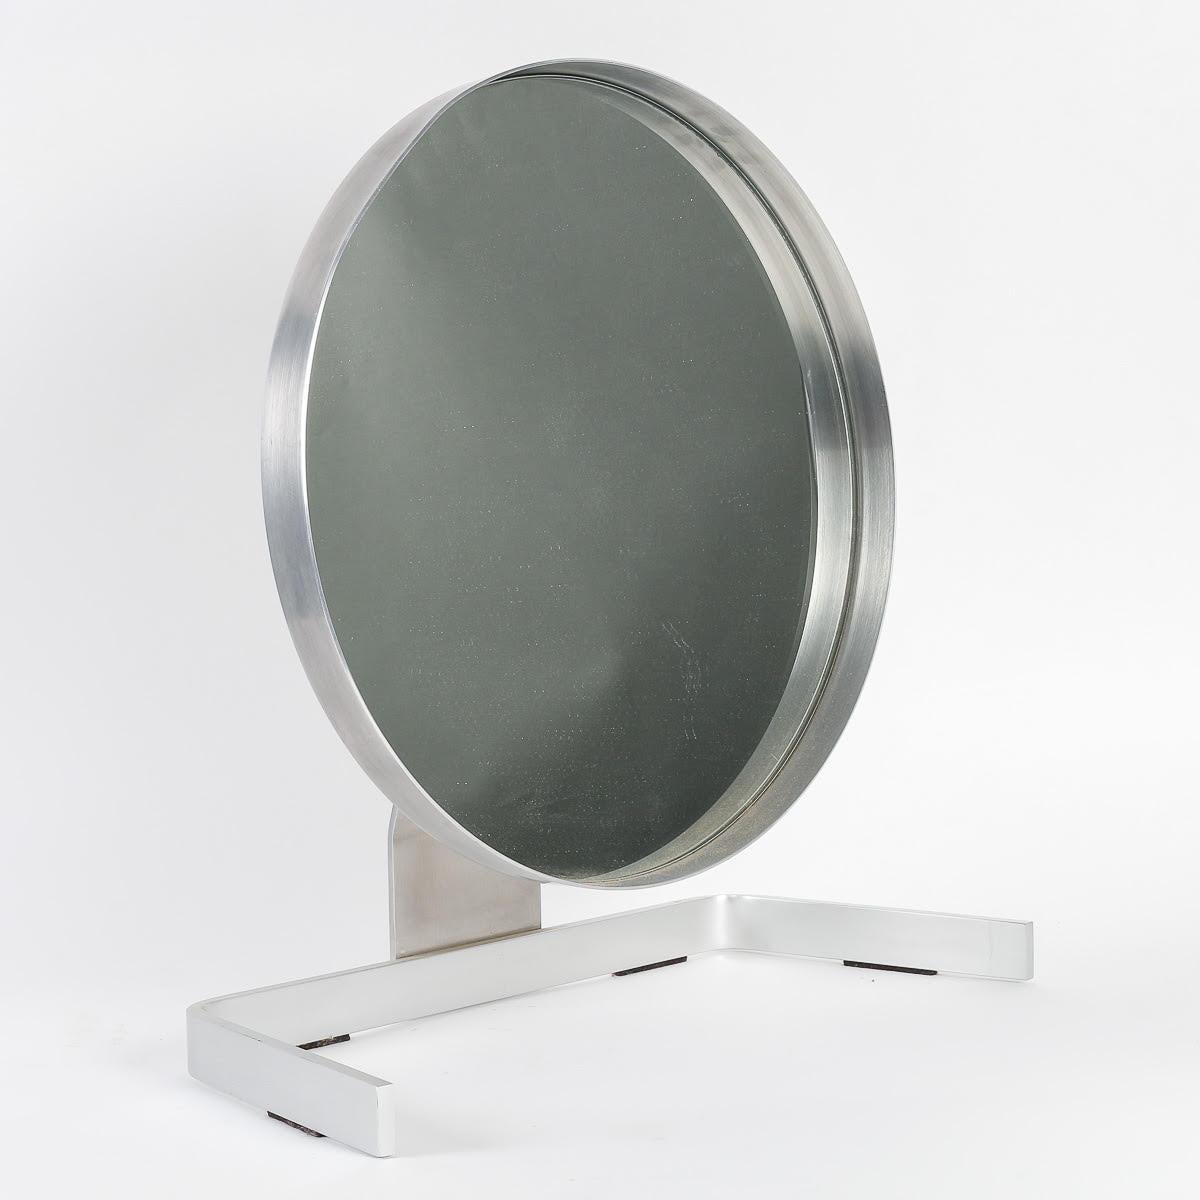 Tischspiegel von Pierre Vandel, 1970, Stahl und Spiegel.

Tischspiegel aus Stahl und Spiegel von Pierre Vandel aus den 1970er Jahren. Leichte Verformung des runden Teils des Spiegels.  
h: 47,5cm , B: 44cm, T: 22cm